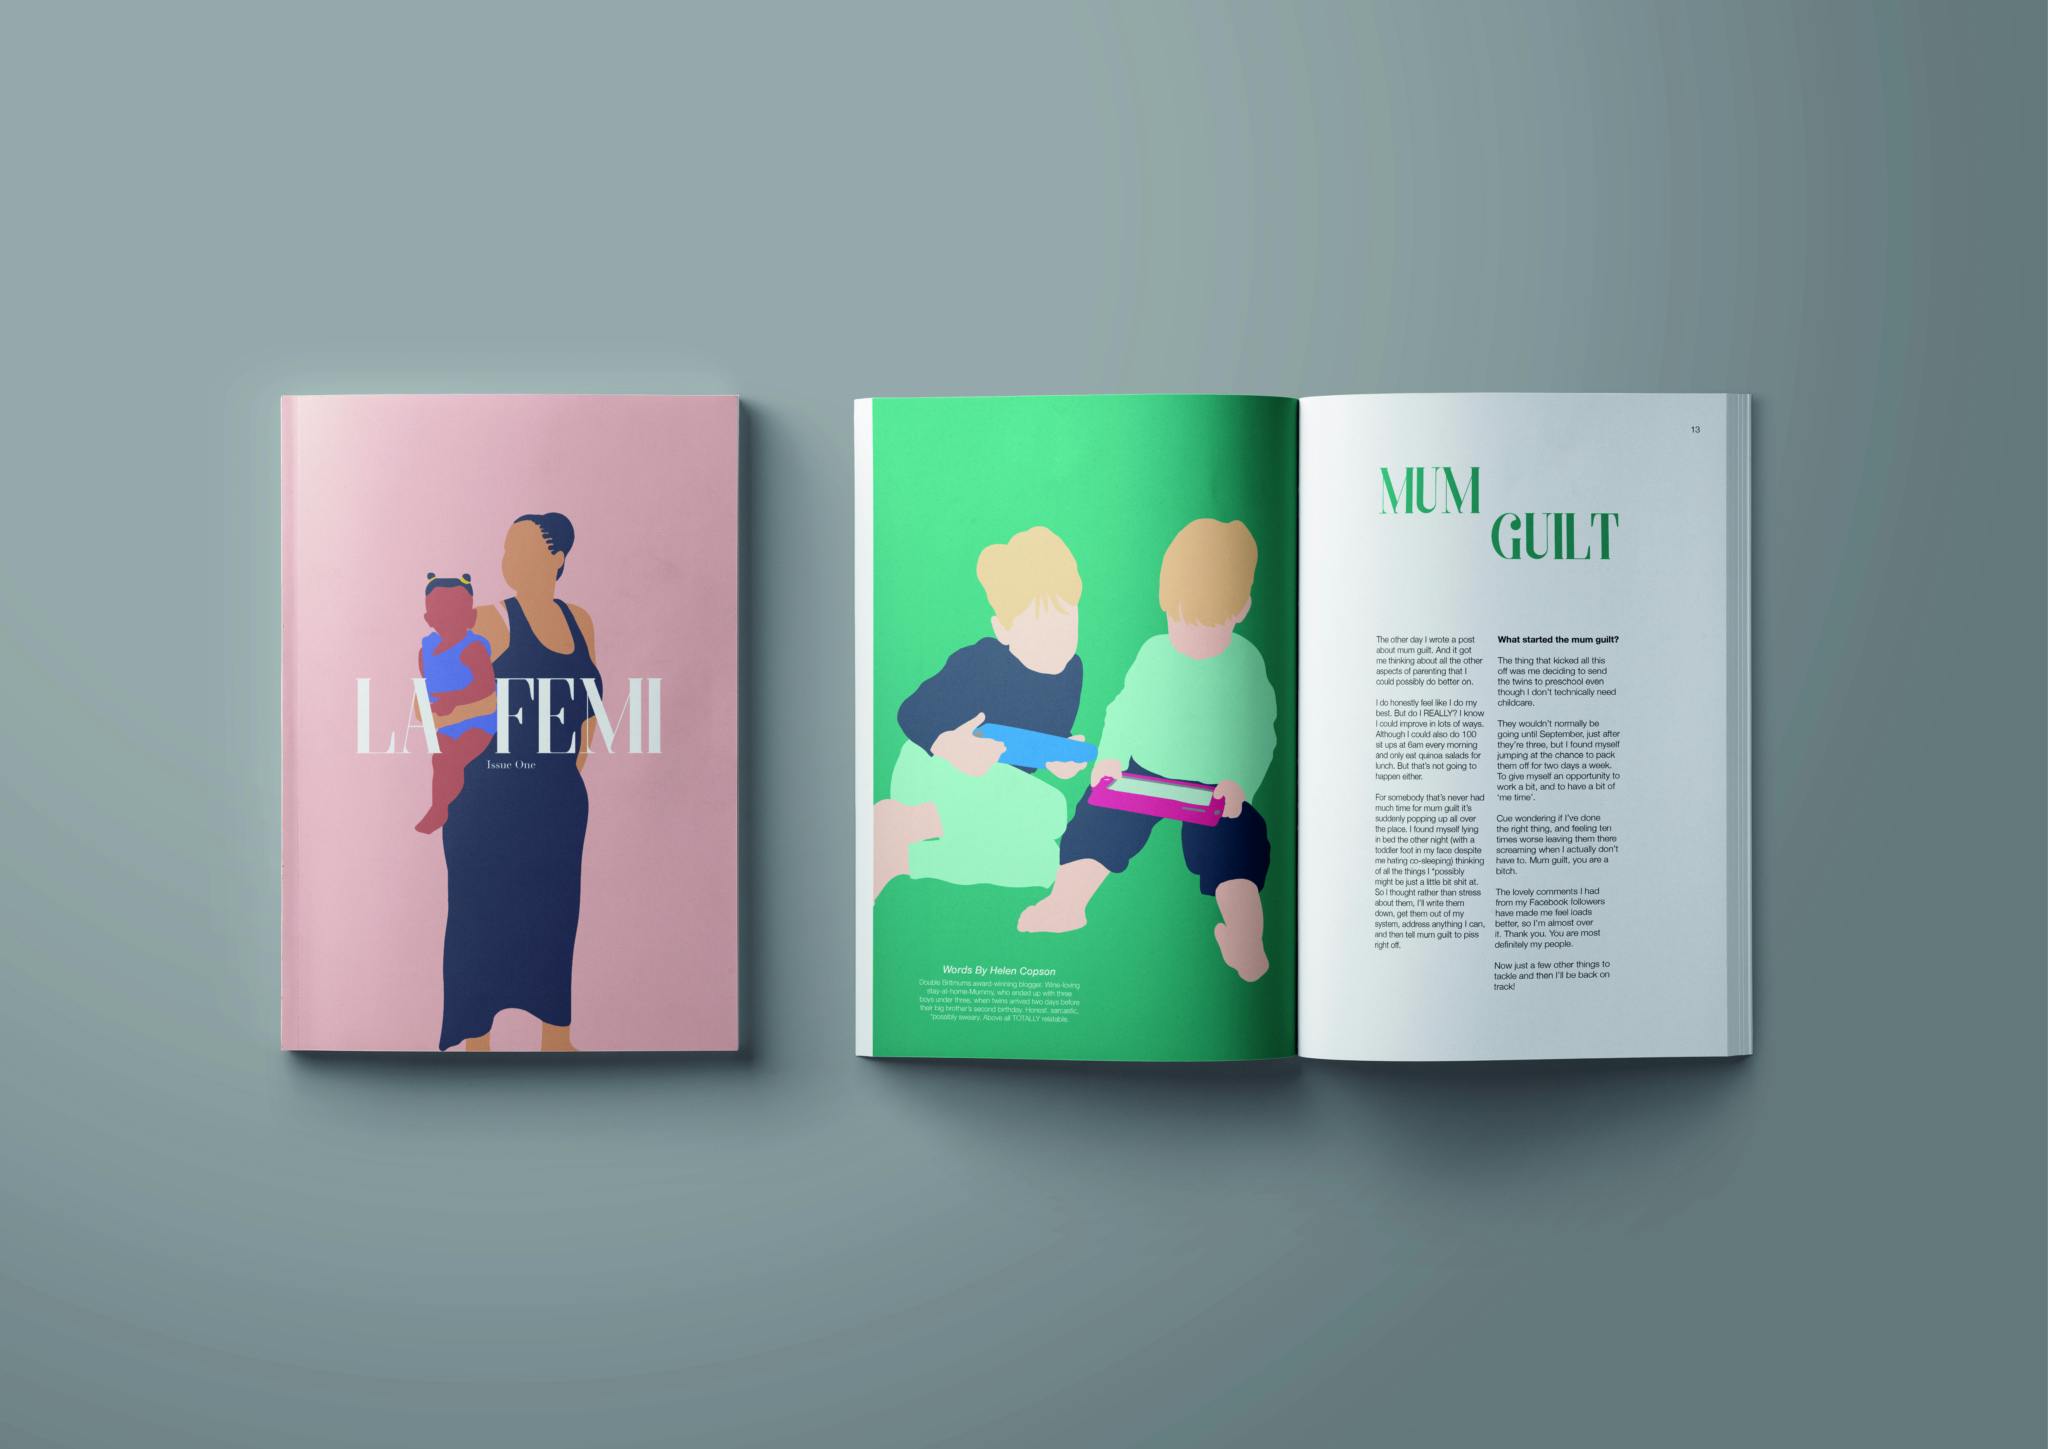 Liv beggs La Femi Magazine Graphic Design